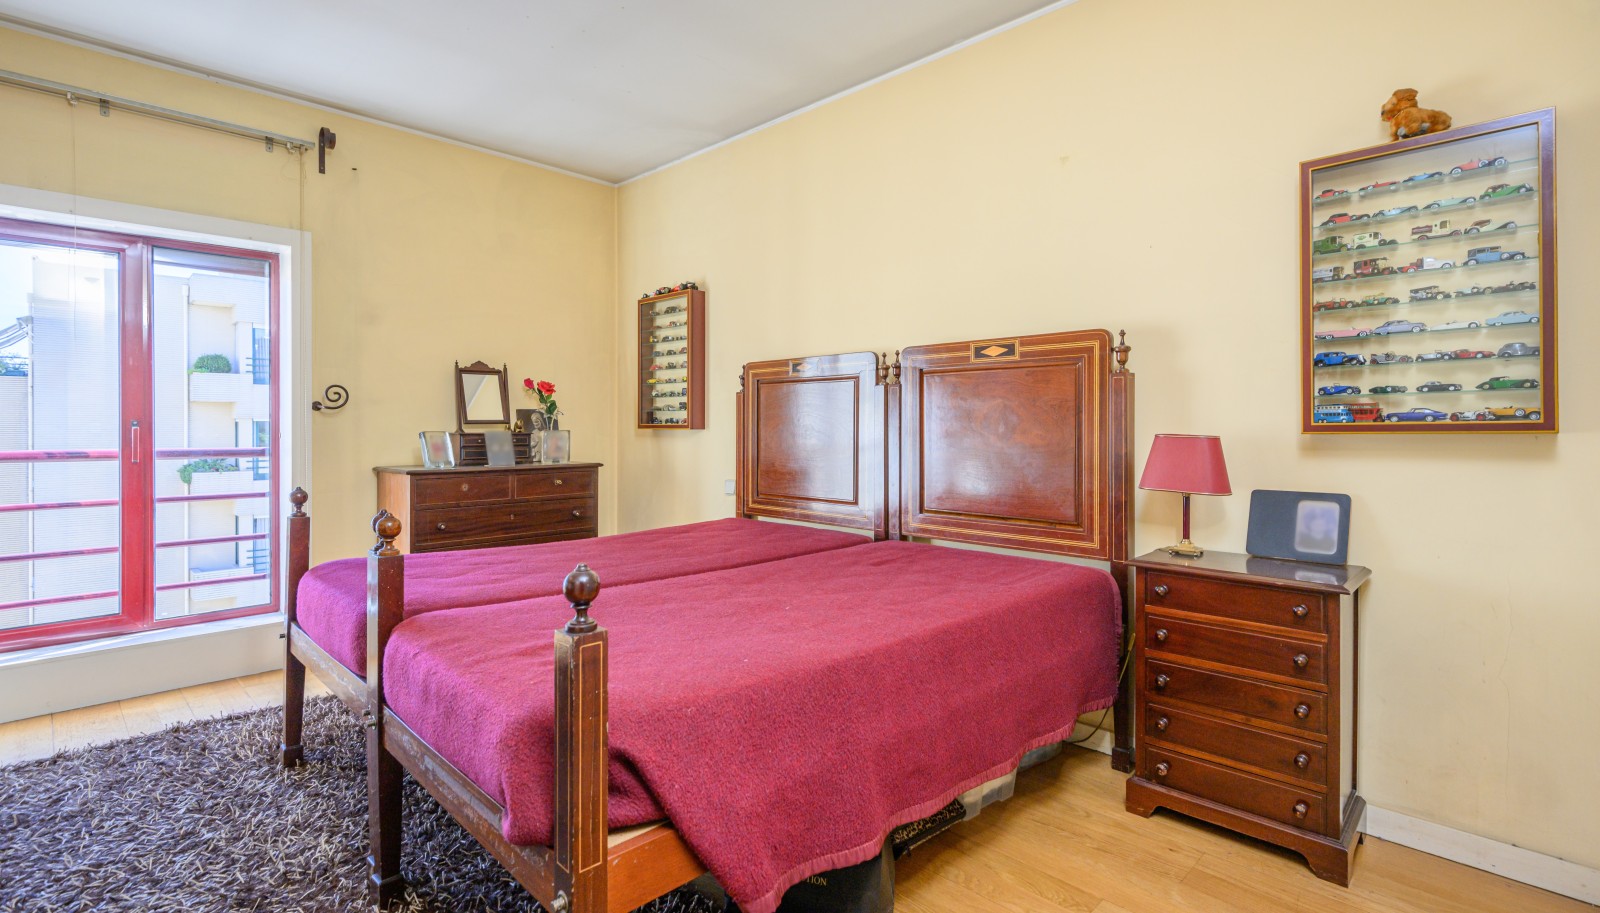 Piso duplex de 4 dormitorios, en venta, en Ramalde, Oporto, Portugal_235519